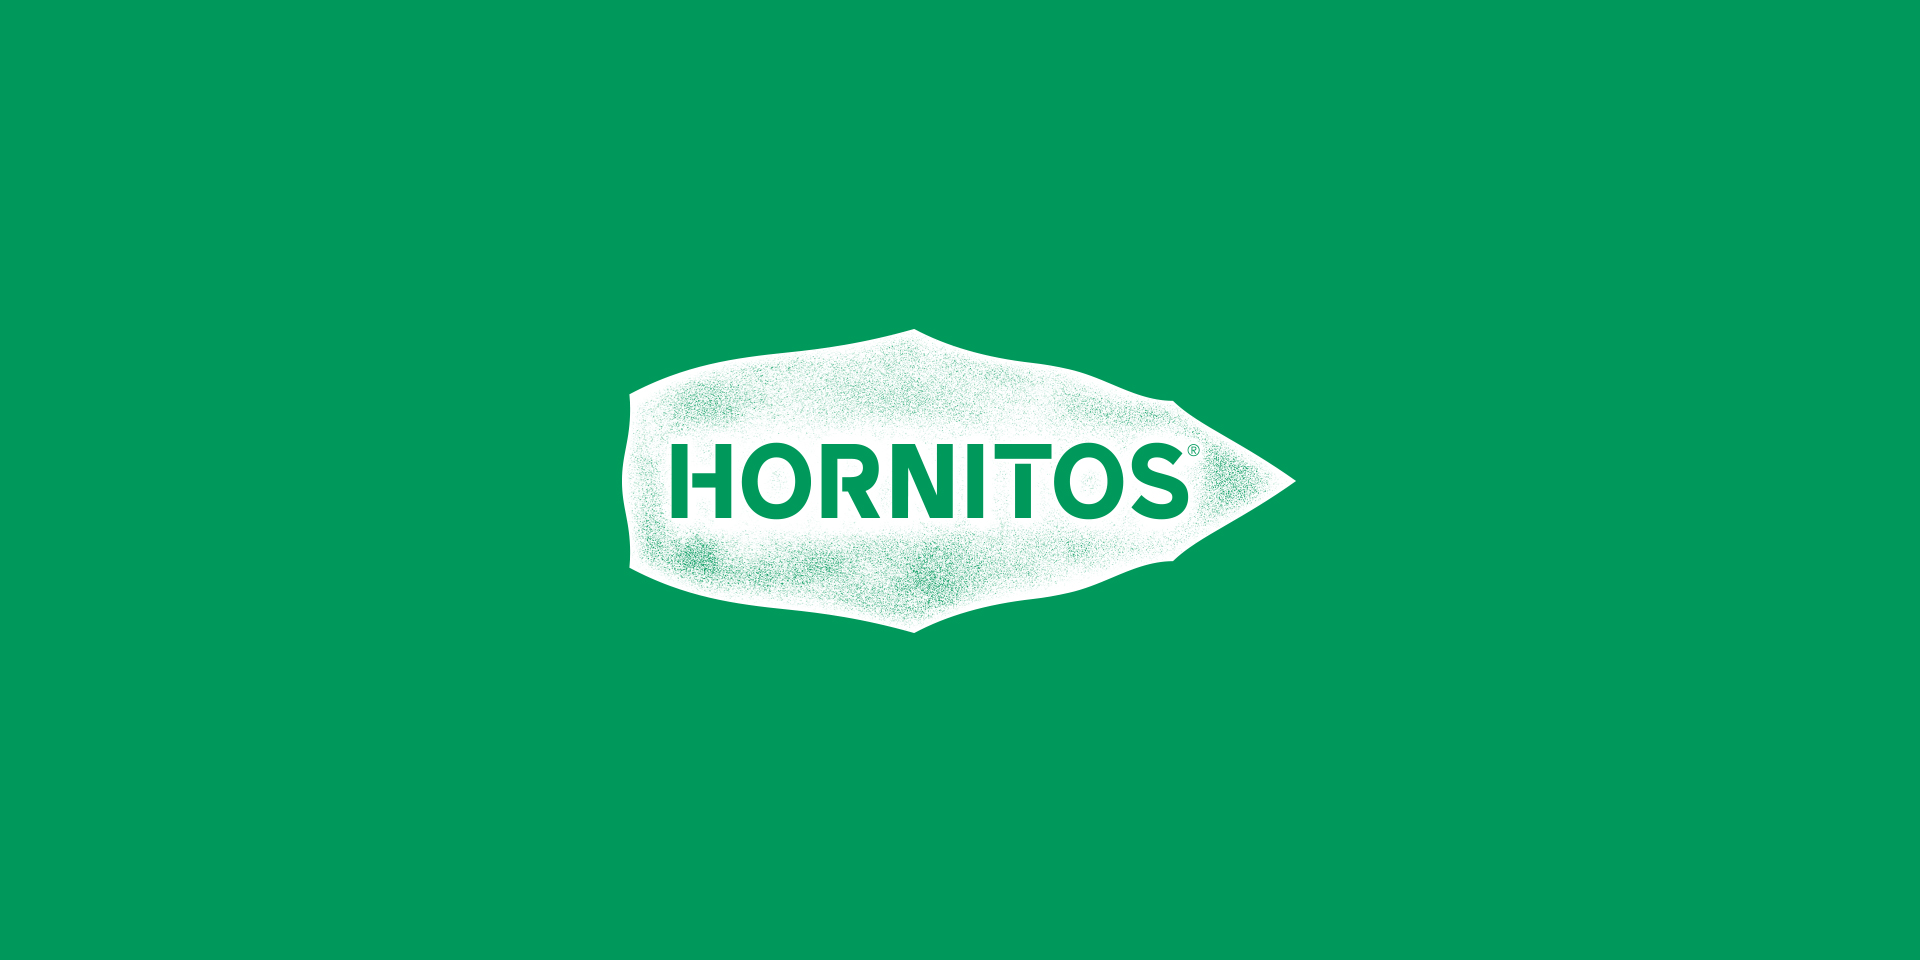 Hornitos brand